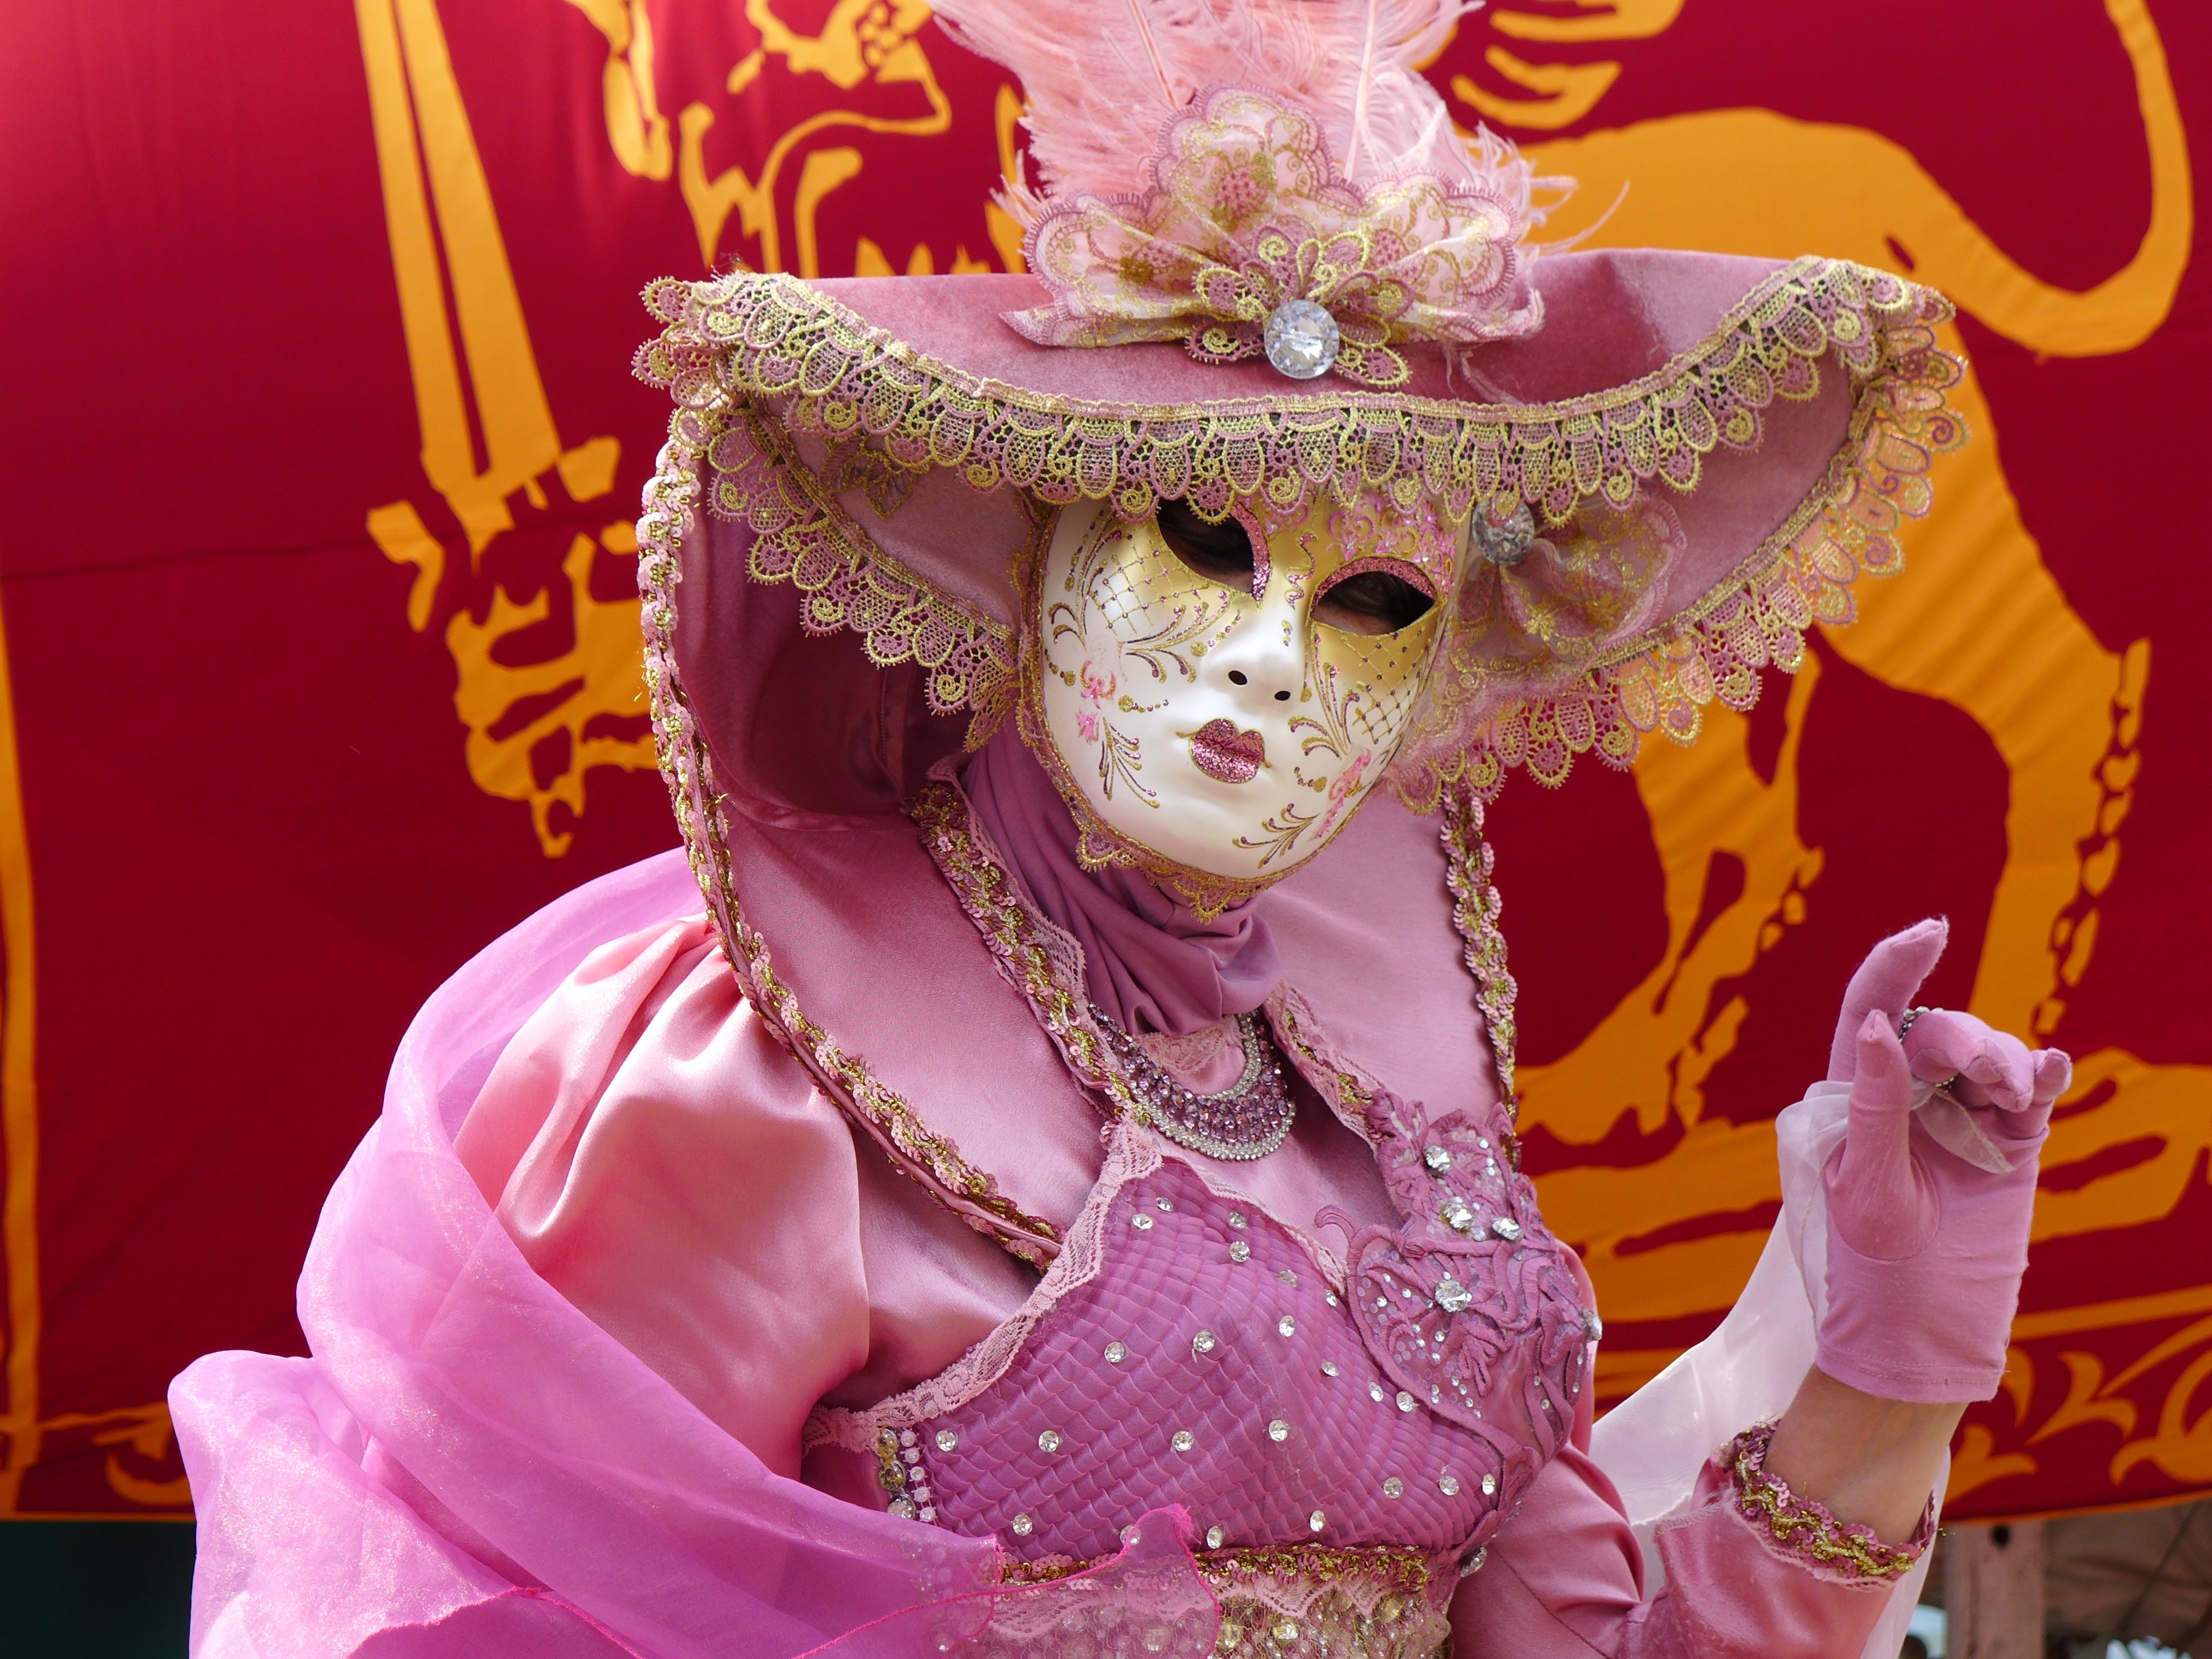 Una persona disfrazada con el traje tradicional de carnaval veneciano.